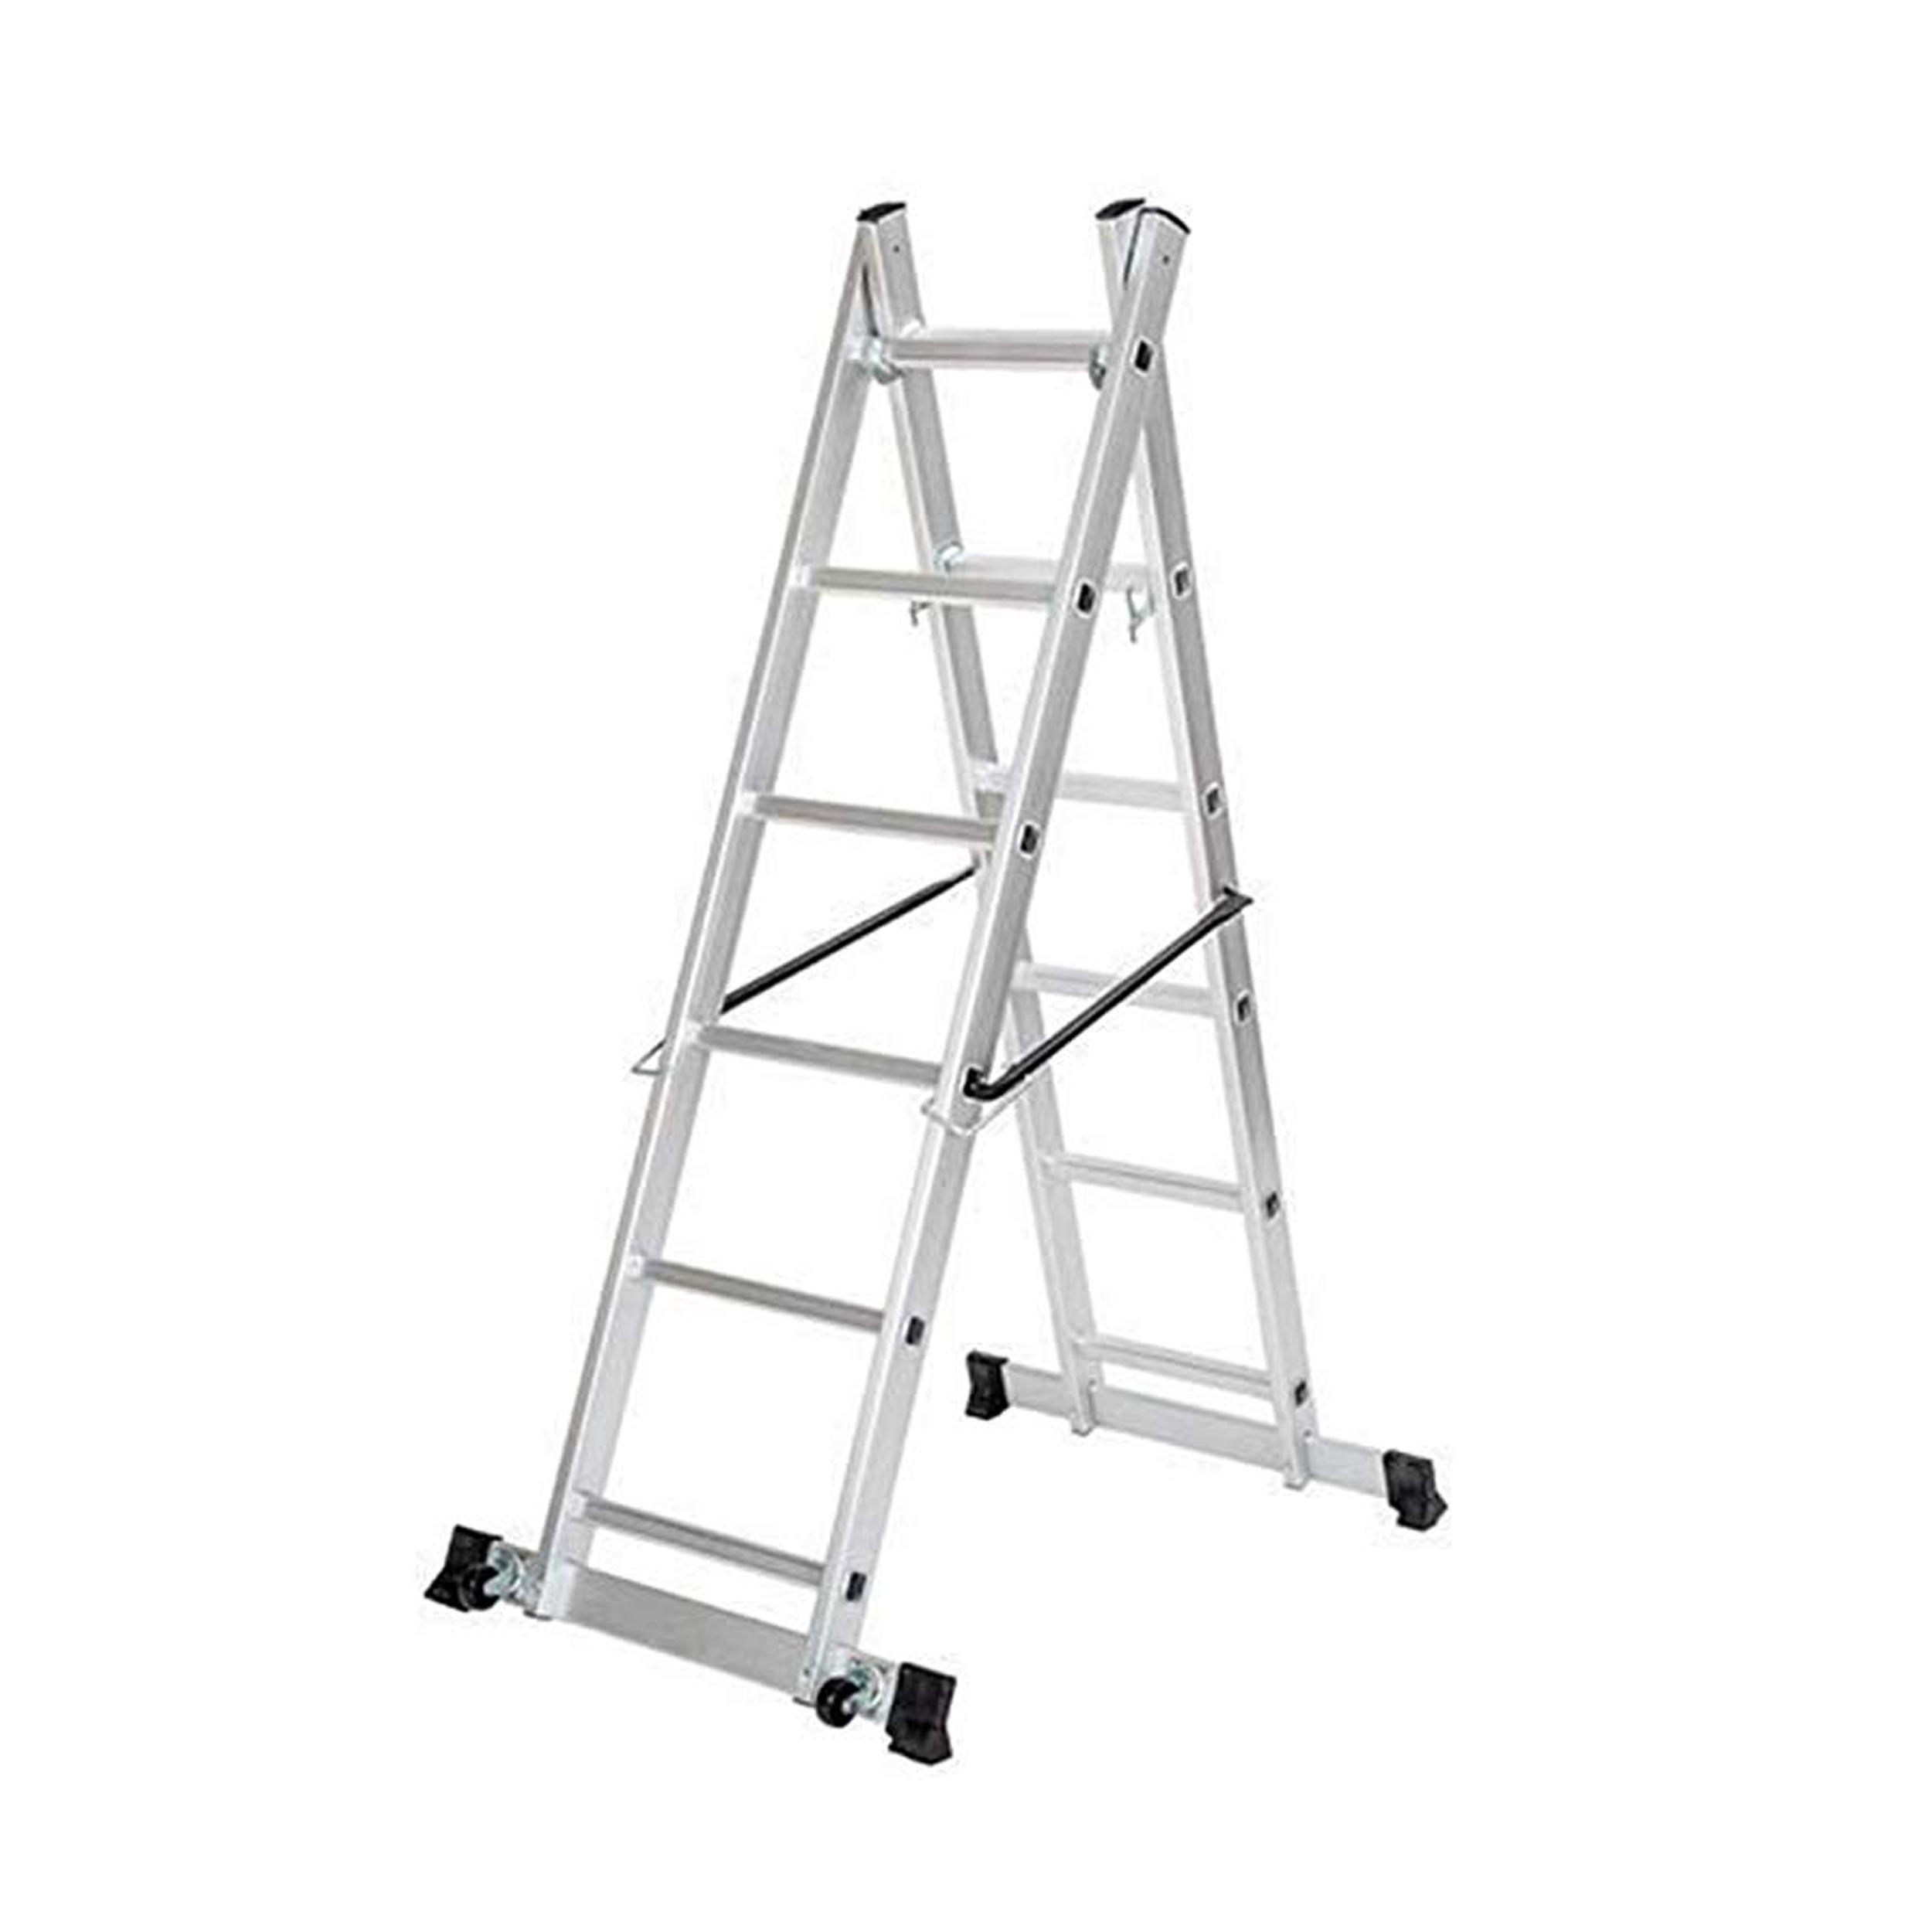 Safeline Scaffold Ladder